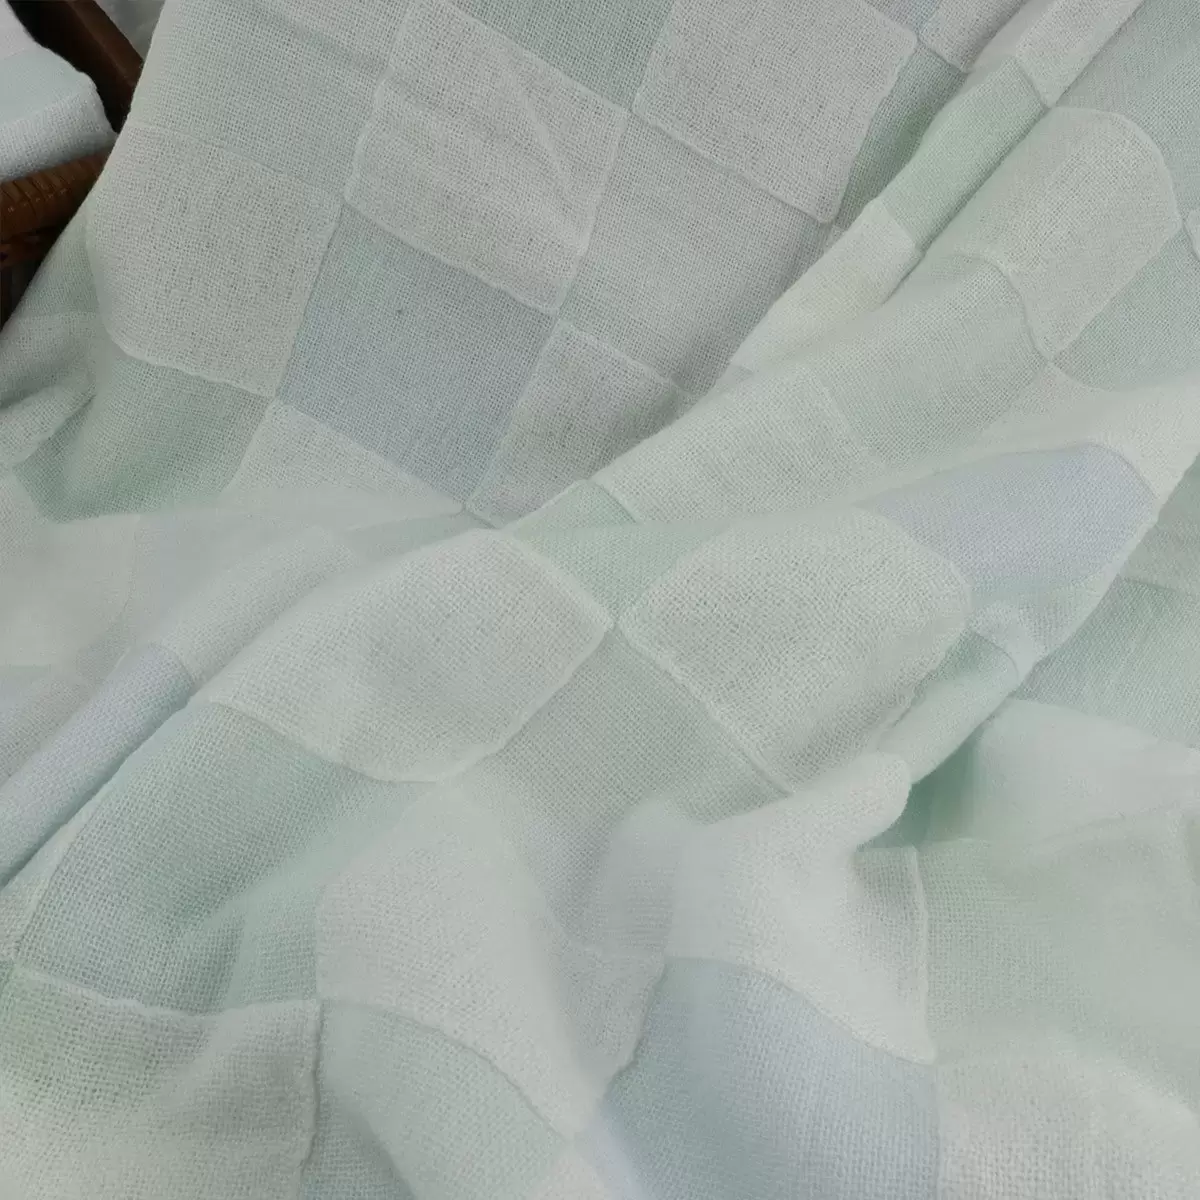 Gemini 雙星毛巾彩色方格雙層紗布浴巾 2入組 66公分 X 137公分 藍 + 灰